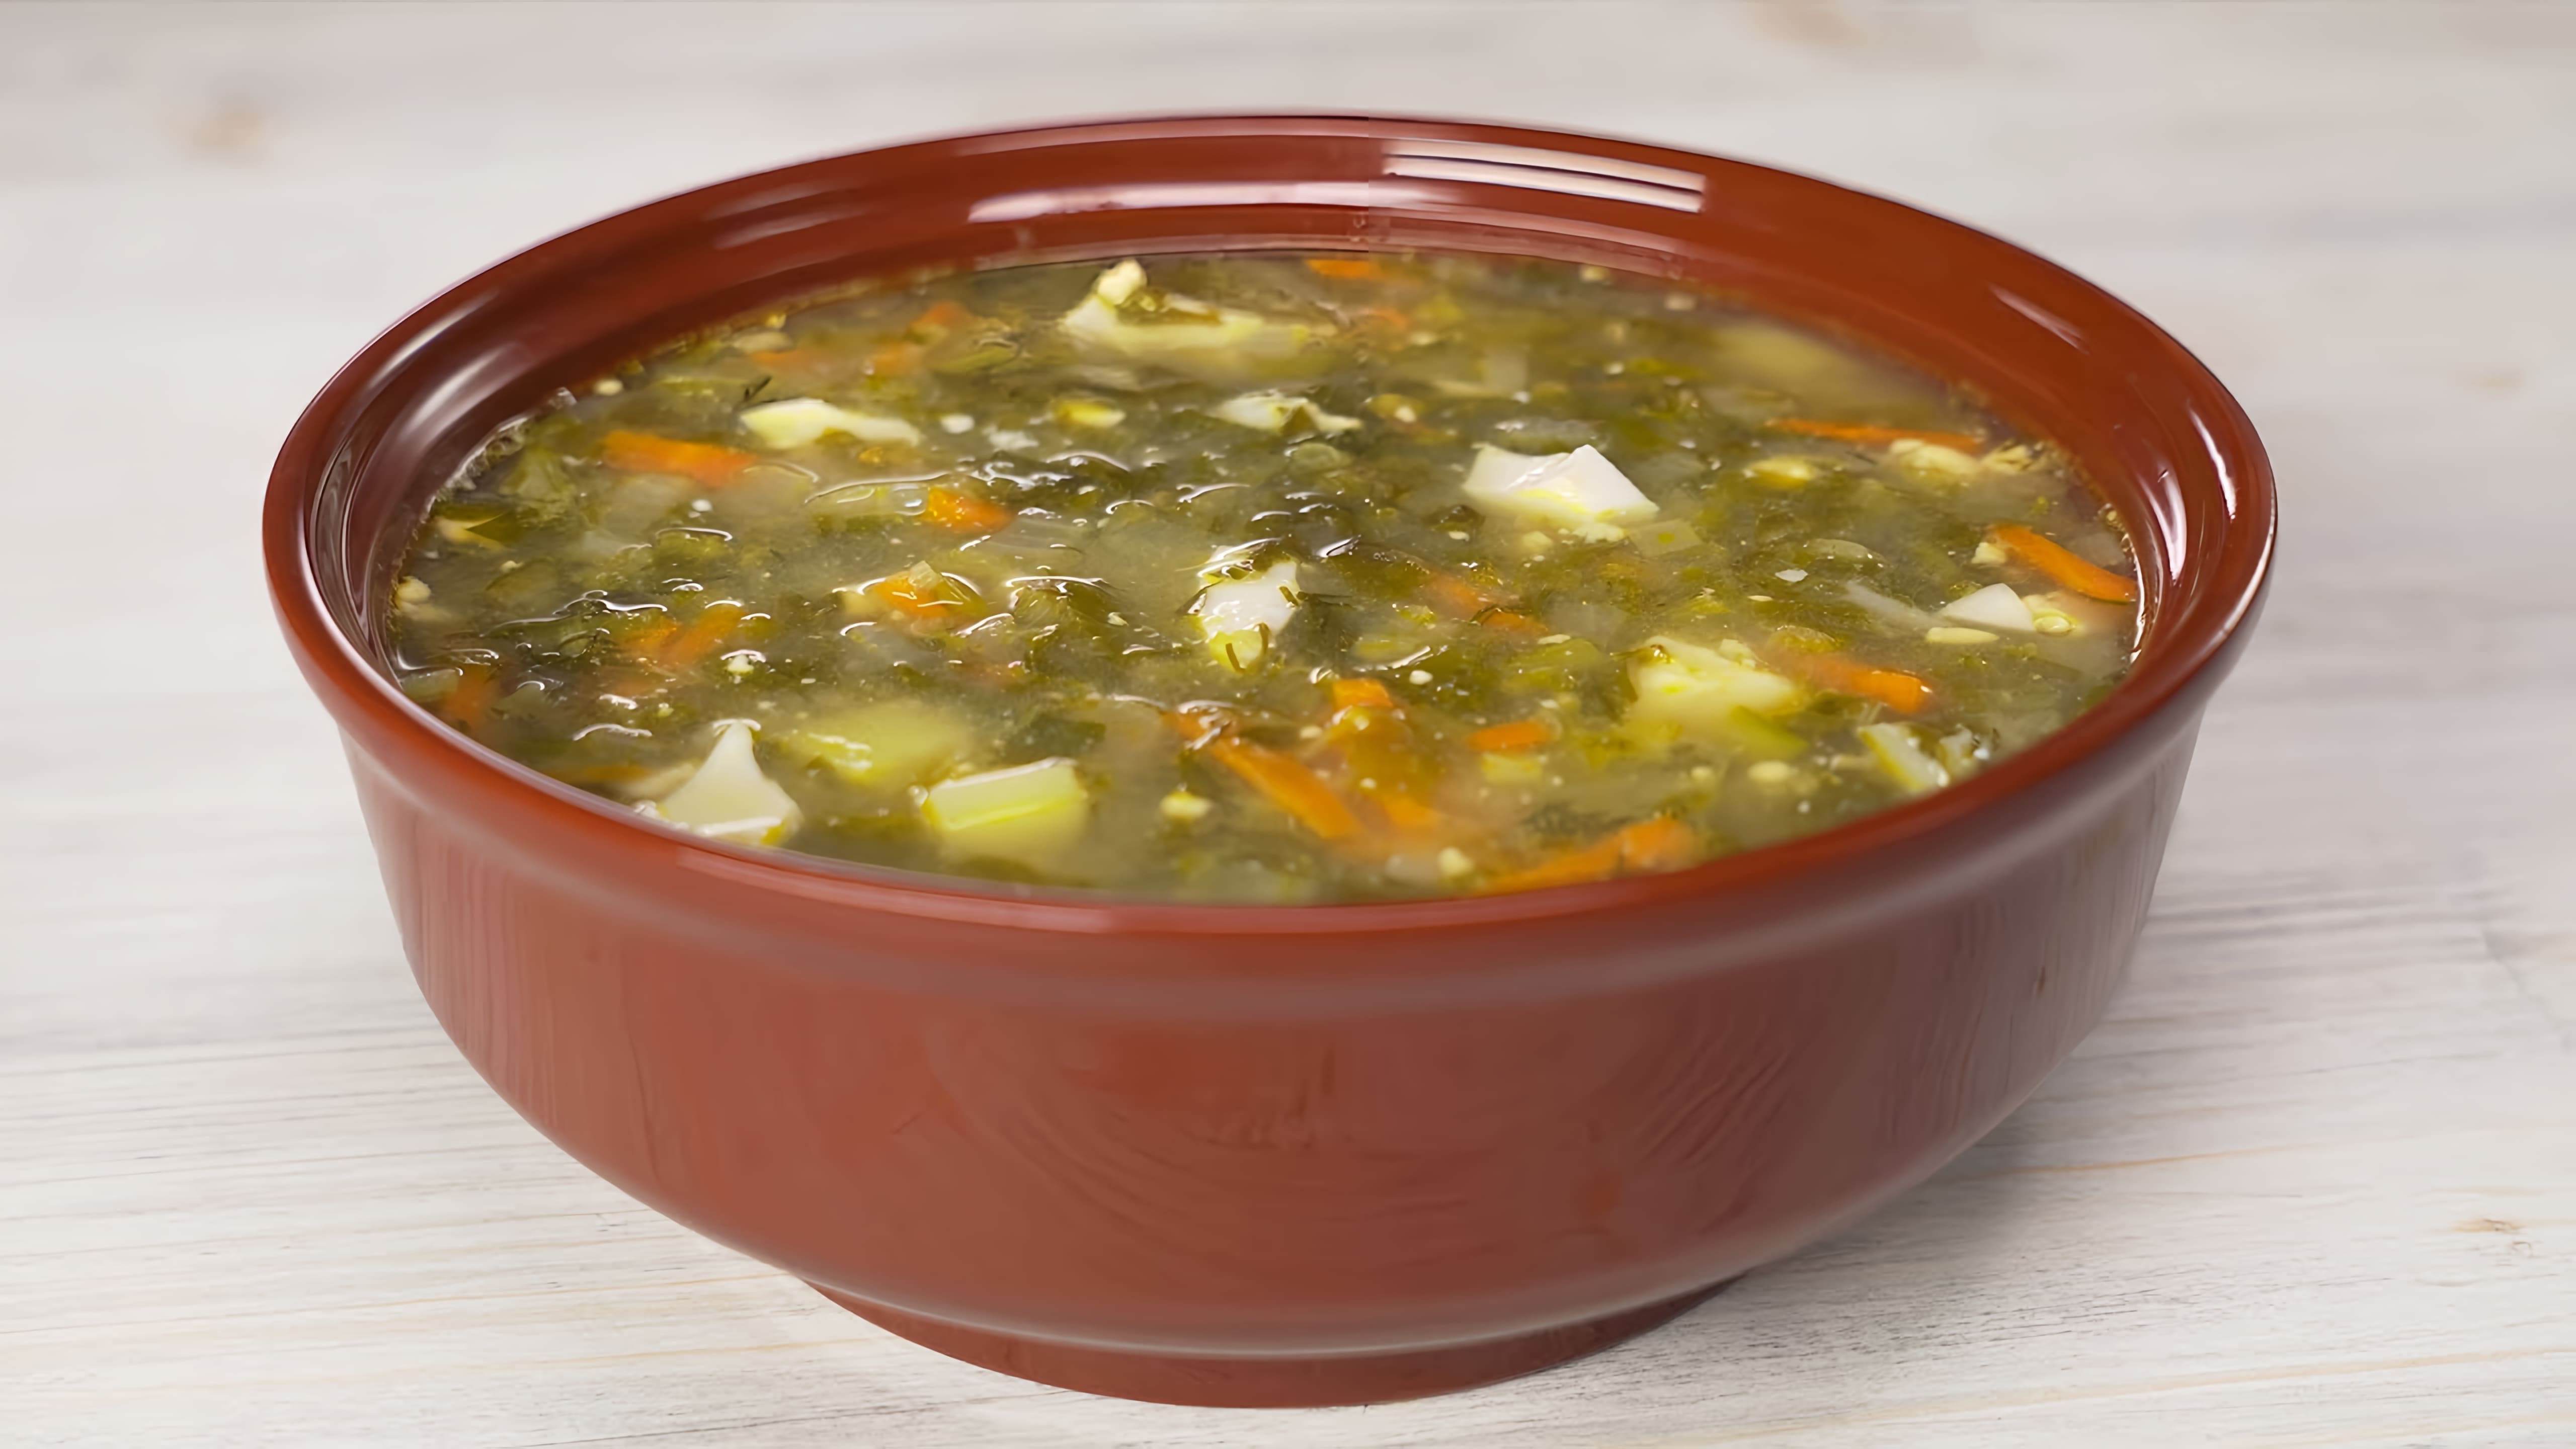 В данном видео демонстрируется рецепт приготовления превосходного щавелевого супа без использования мяса